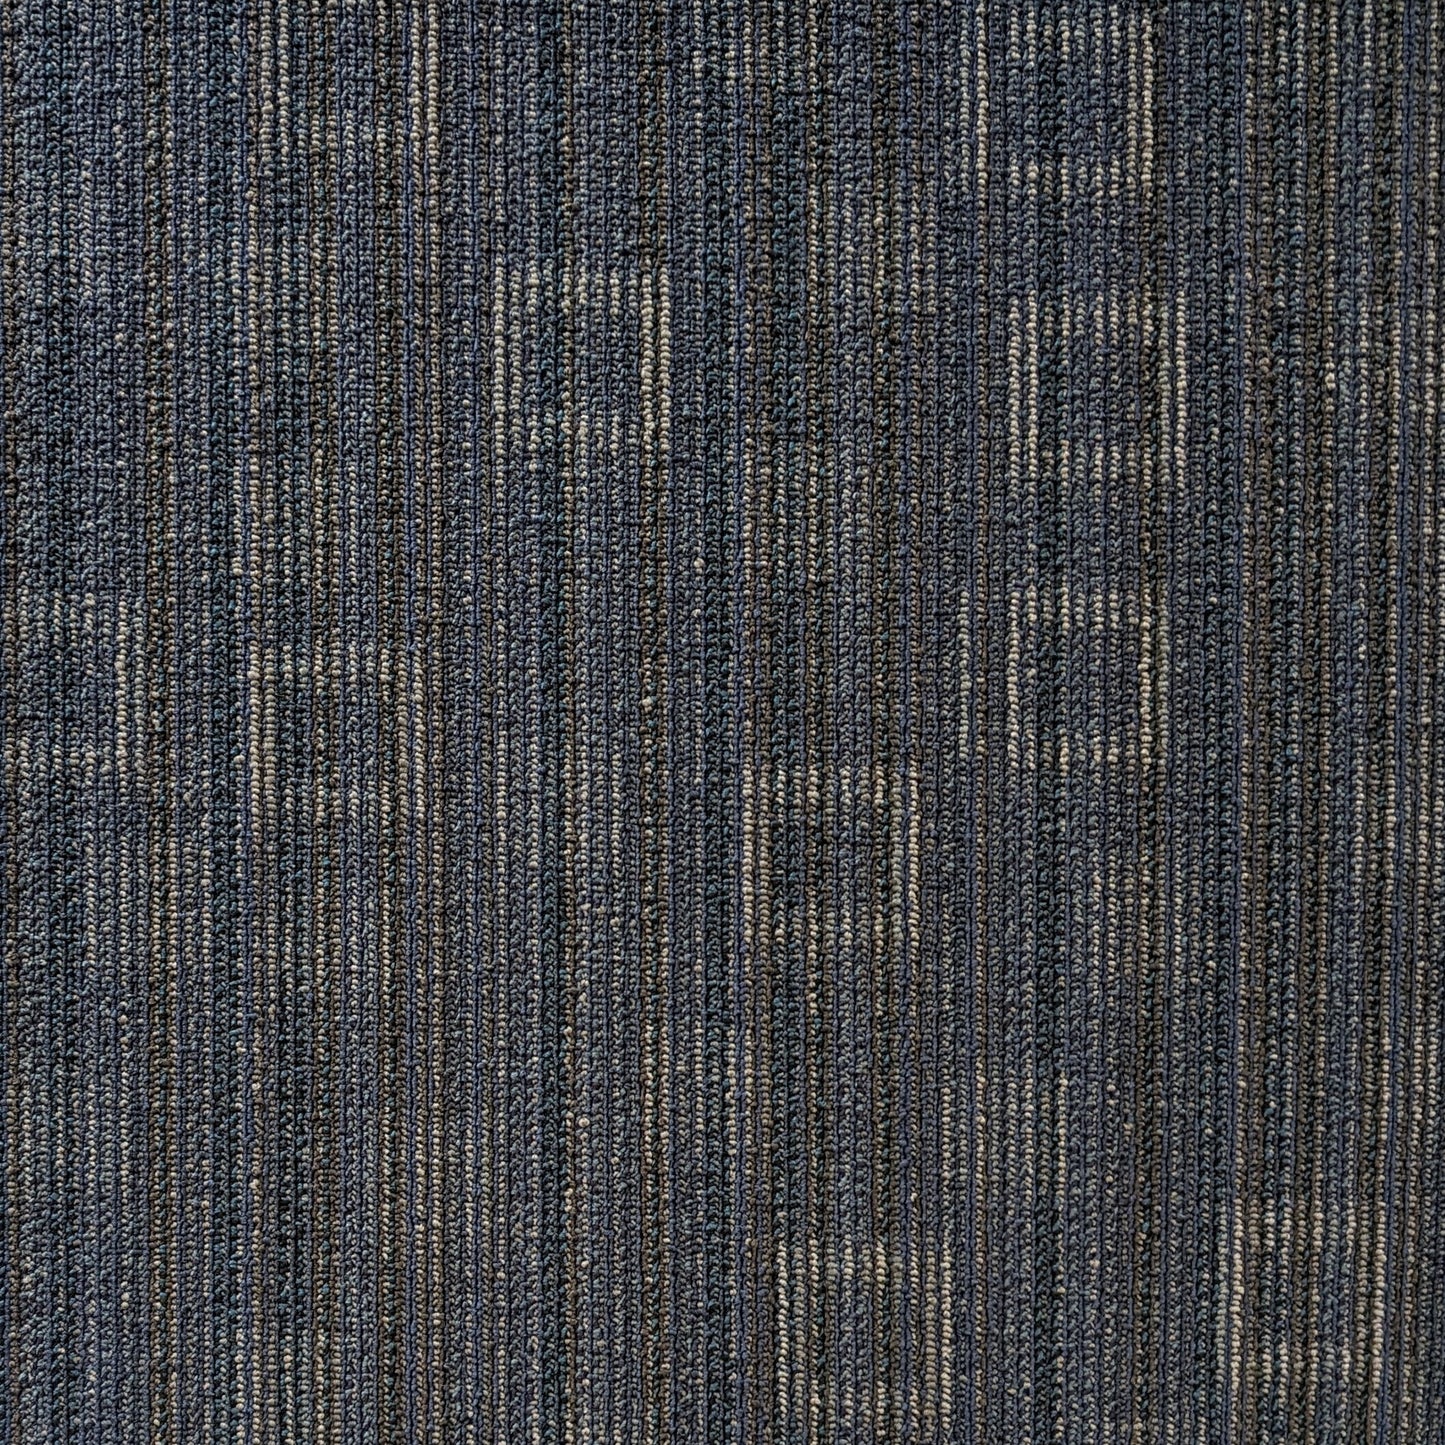 Shaw 00425 DK BLUE Carpet Tile. 48sq.ft./Case